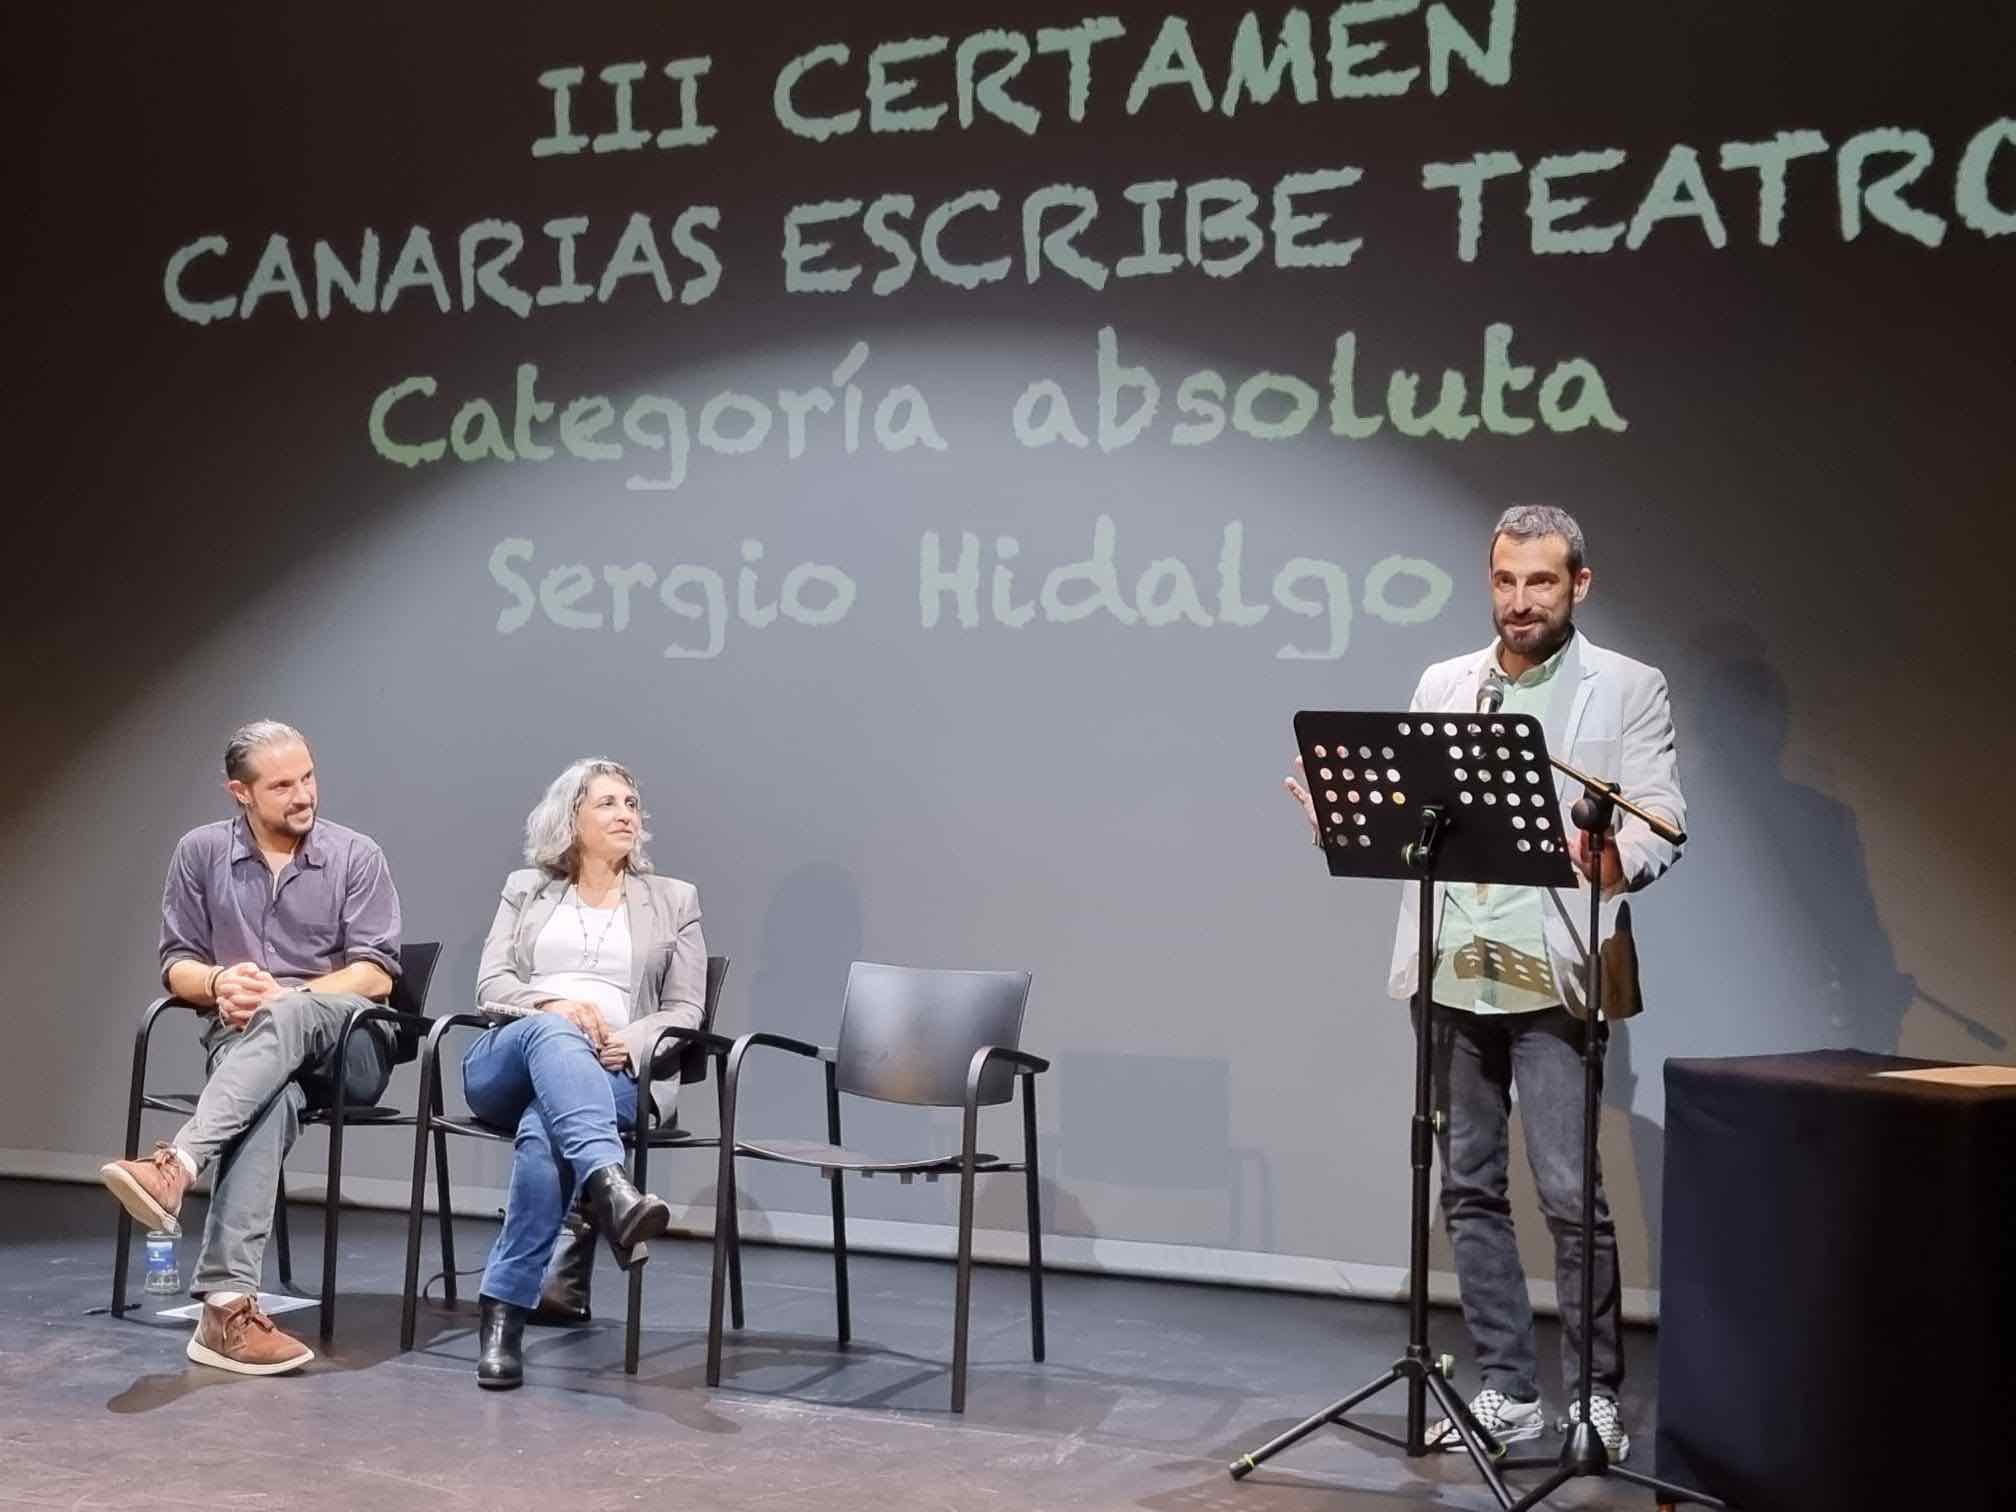 Sergio Hidalgo, alumno de la Escuela Municipal de Teatro, premiado en el III Certamen Canarias Escribe Teatro